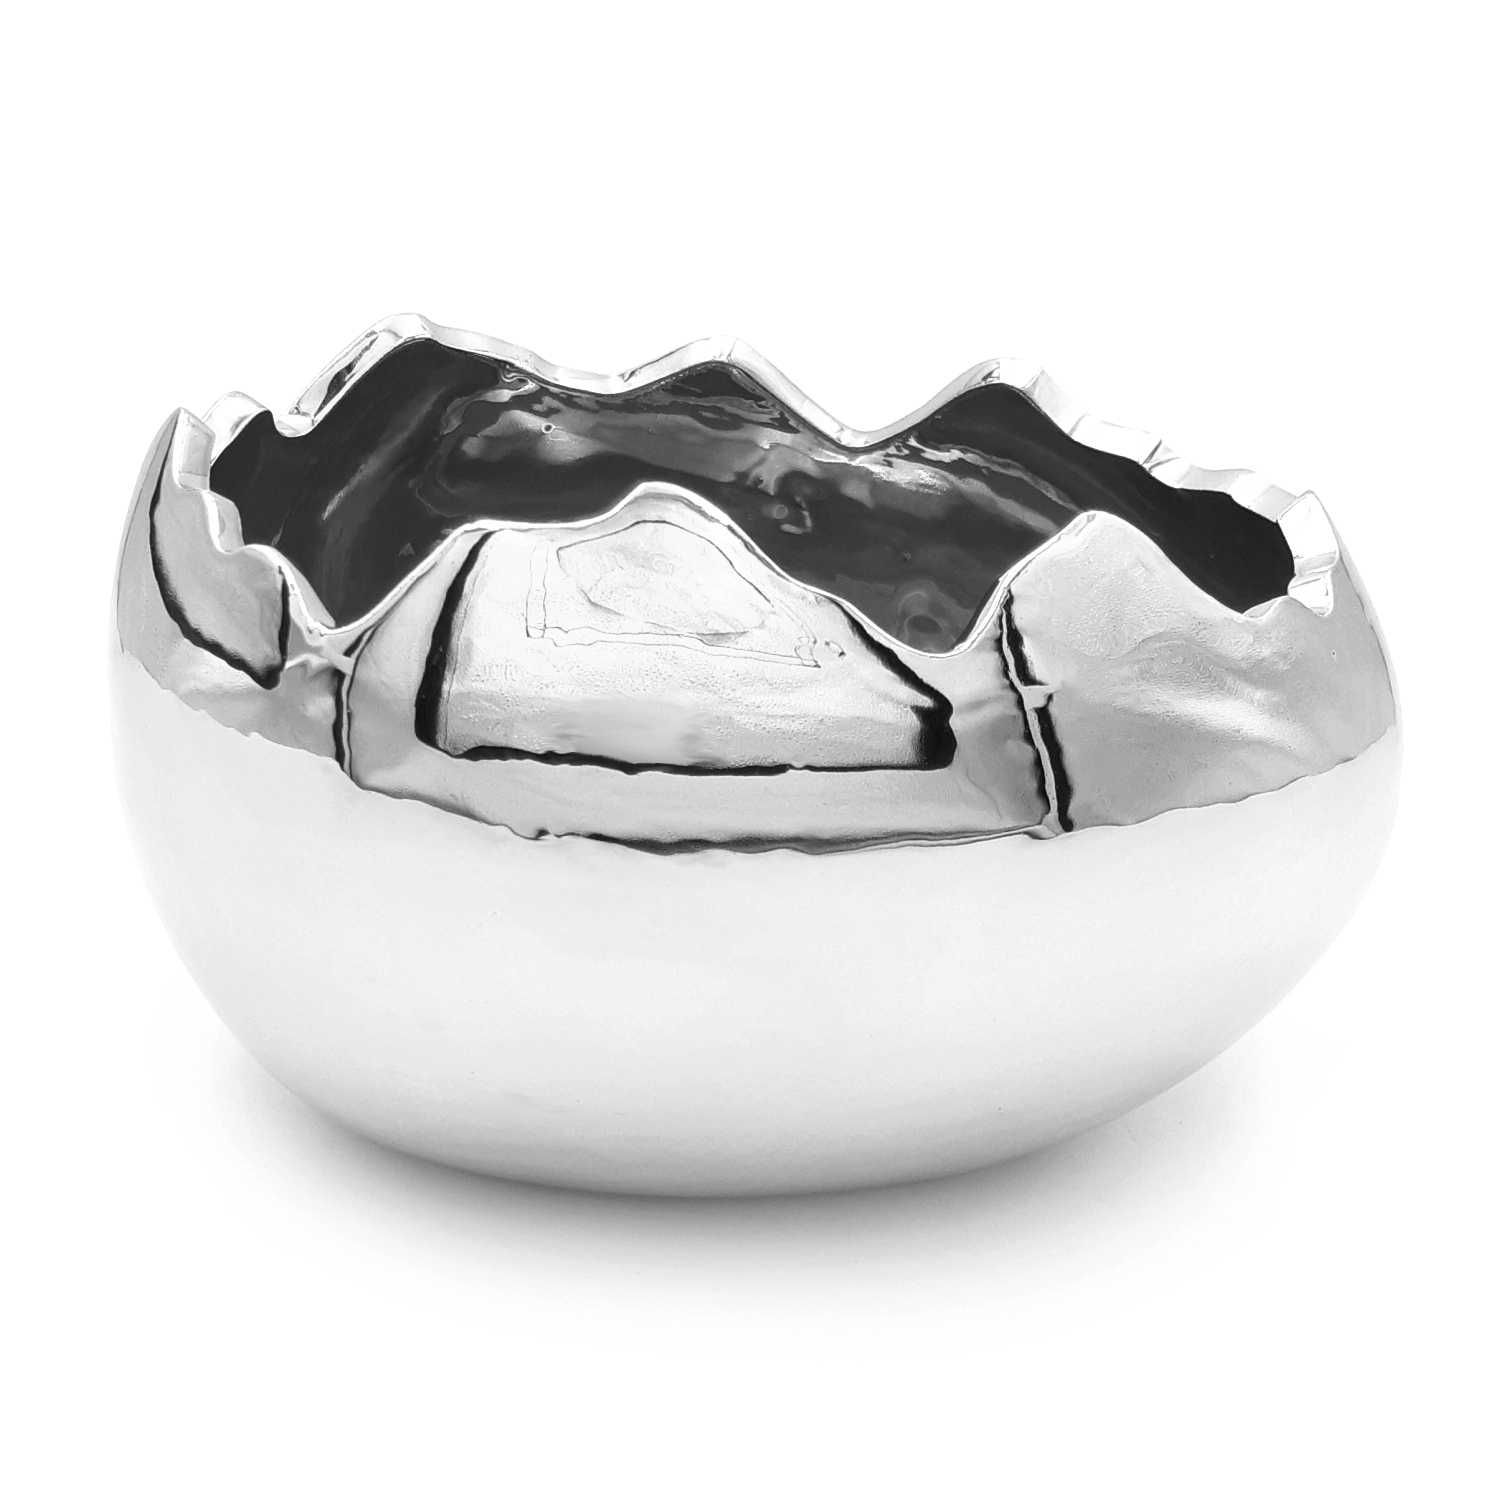 Jajko wielkanocne srebrne skorupka osłonka doniczka 17 cm